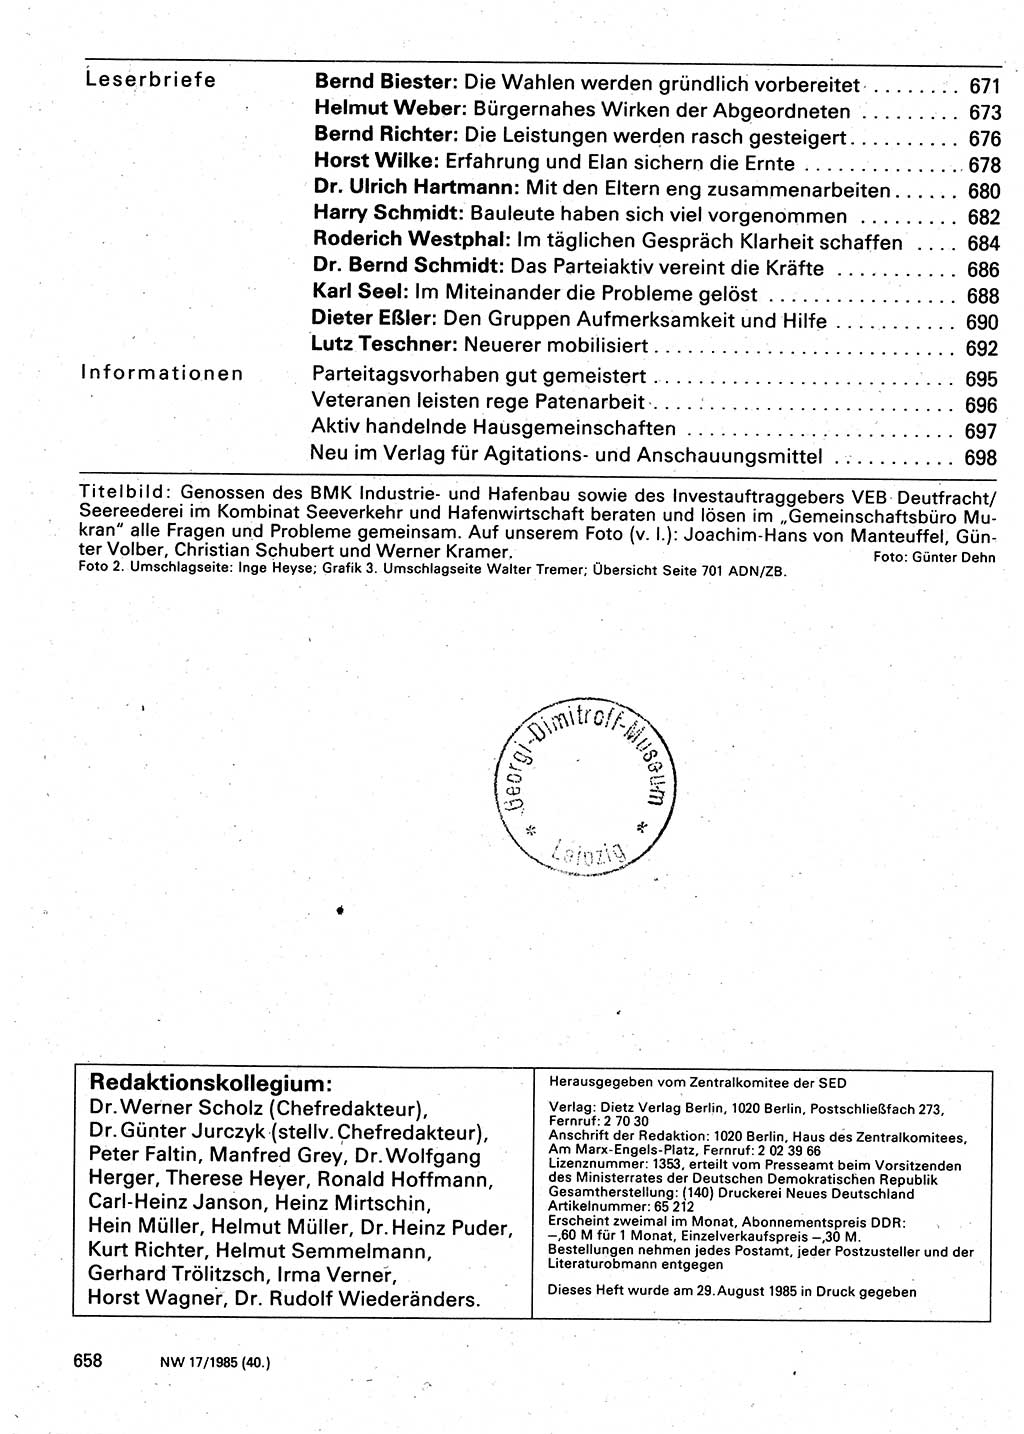 Neuer Weg (NW), Organ des Zentralkomitees (ZK) der SED (Sozialistische Einheitspartei Deutschlands) für Fragen des Parteilebens, 40. Jahrgang [Deutsche Demokratische Republik (DDR)] 1985, Seite 658 (NW ZK SED DDR 1985, S. 658)